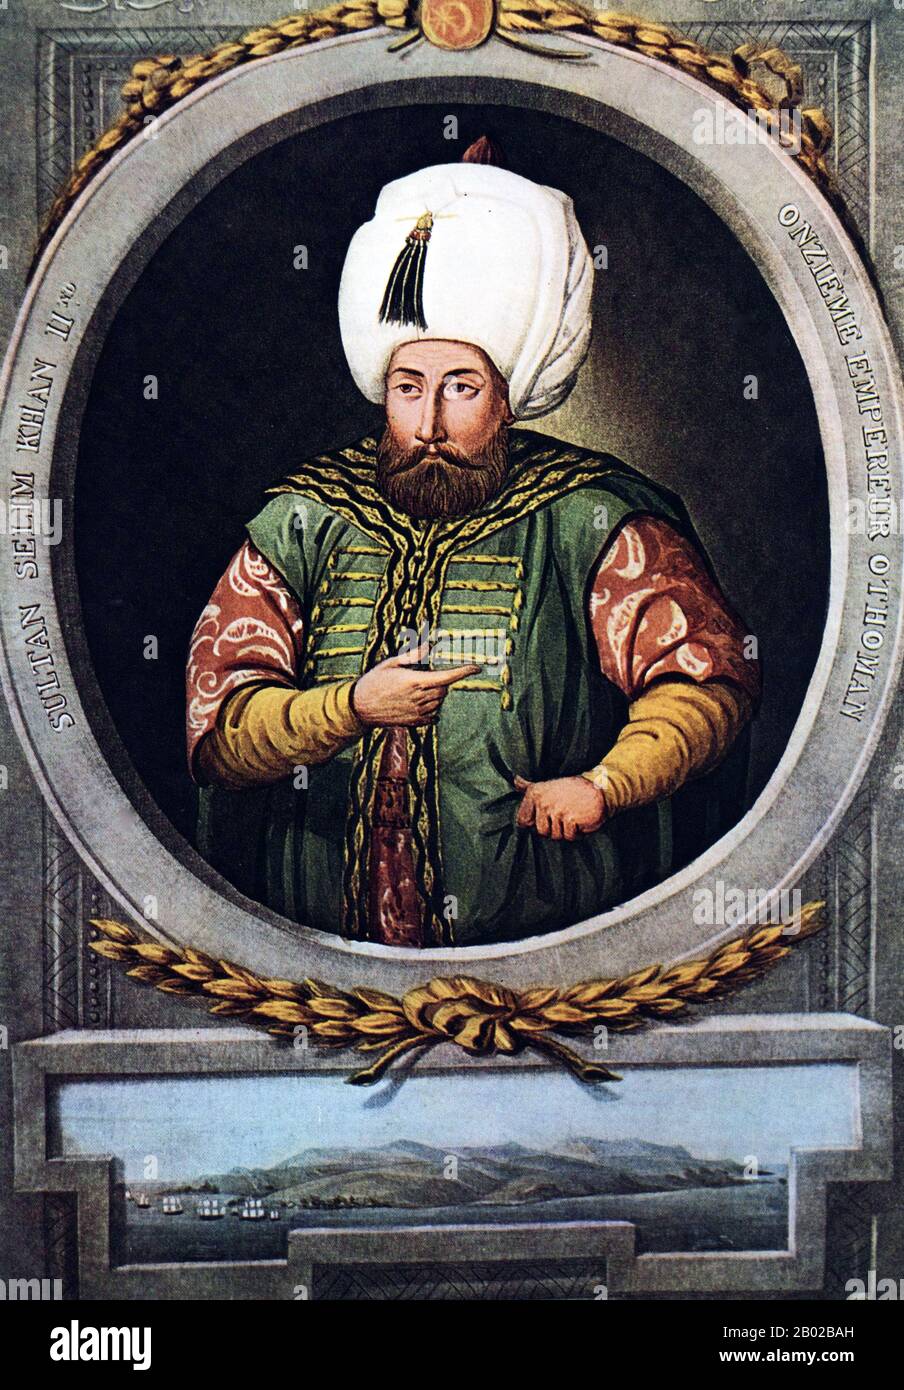 Selim II (osmanisch-türkisch: سليم ثانى Selīm-i sānī; 28. Mai 1524 - 12. Dezember/15. Dezember 1574), auch bekannt als 'Selim the Sot' und als 'Sarı Selim' (Selim the Blonde), war von 1566 bis zu seinem Tod 1574 Sultan des Osmanenreiches. Stockfoto